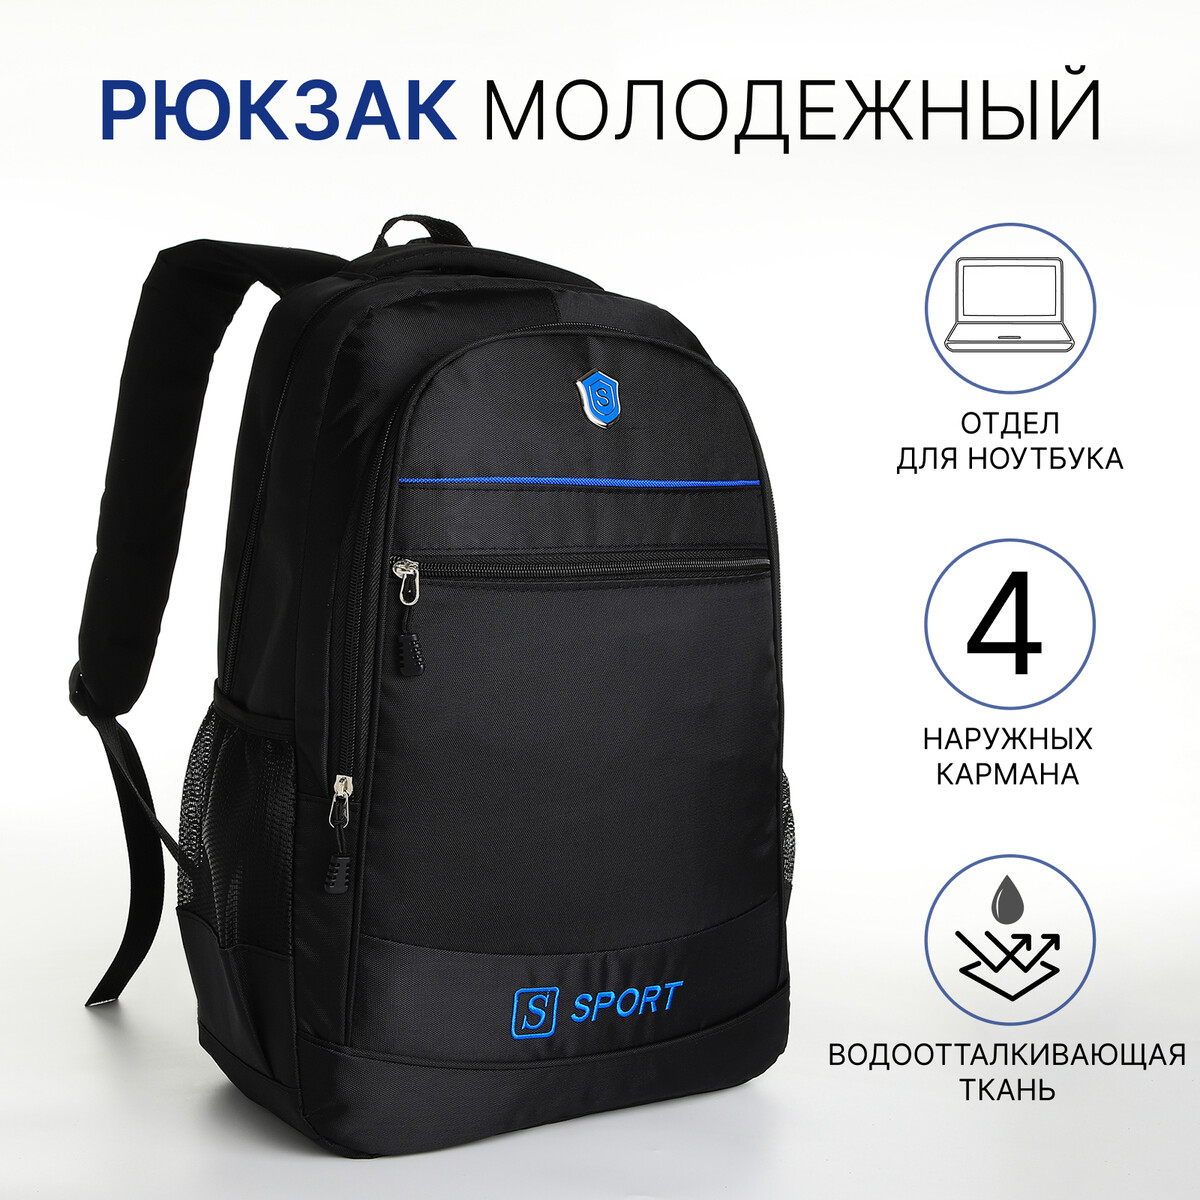 Рюкзак молодежный из текстиля на молнии, 4 карманов, цвет черный/синий рюкзак на молнии 5 наружных карманов пенал синий